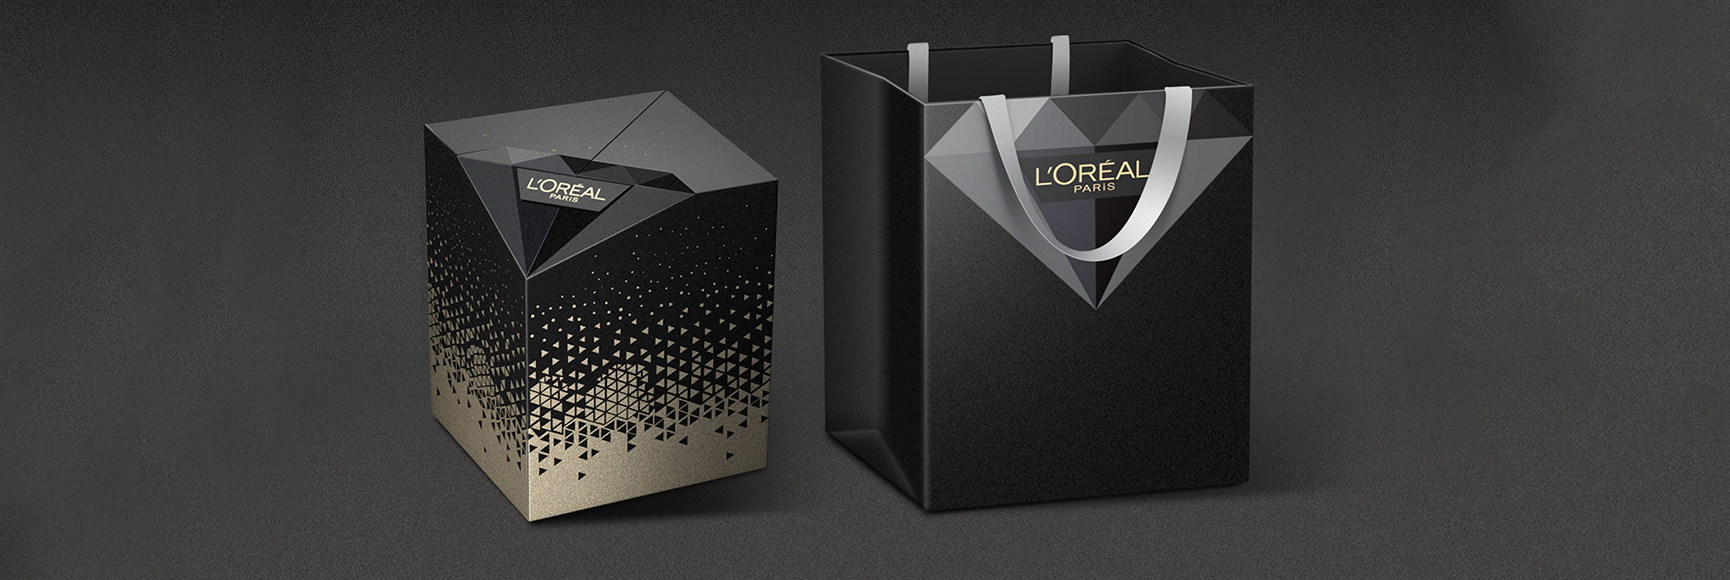 Подарочный набор L'Oréal's Age Perfect Deluxe по уходу за кожей PR Дизайн упаковки Рекомендуемое изображение